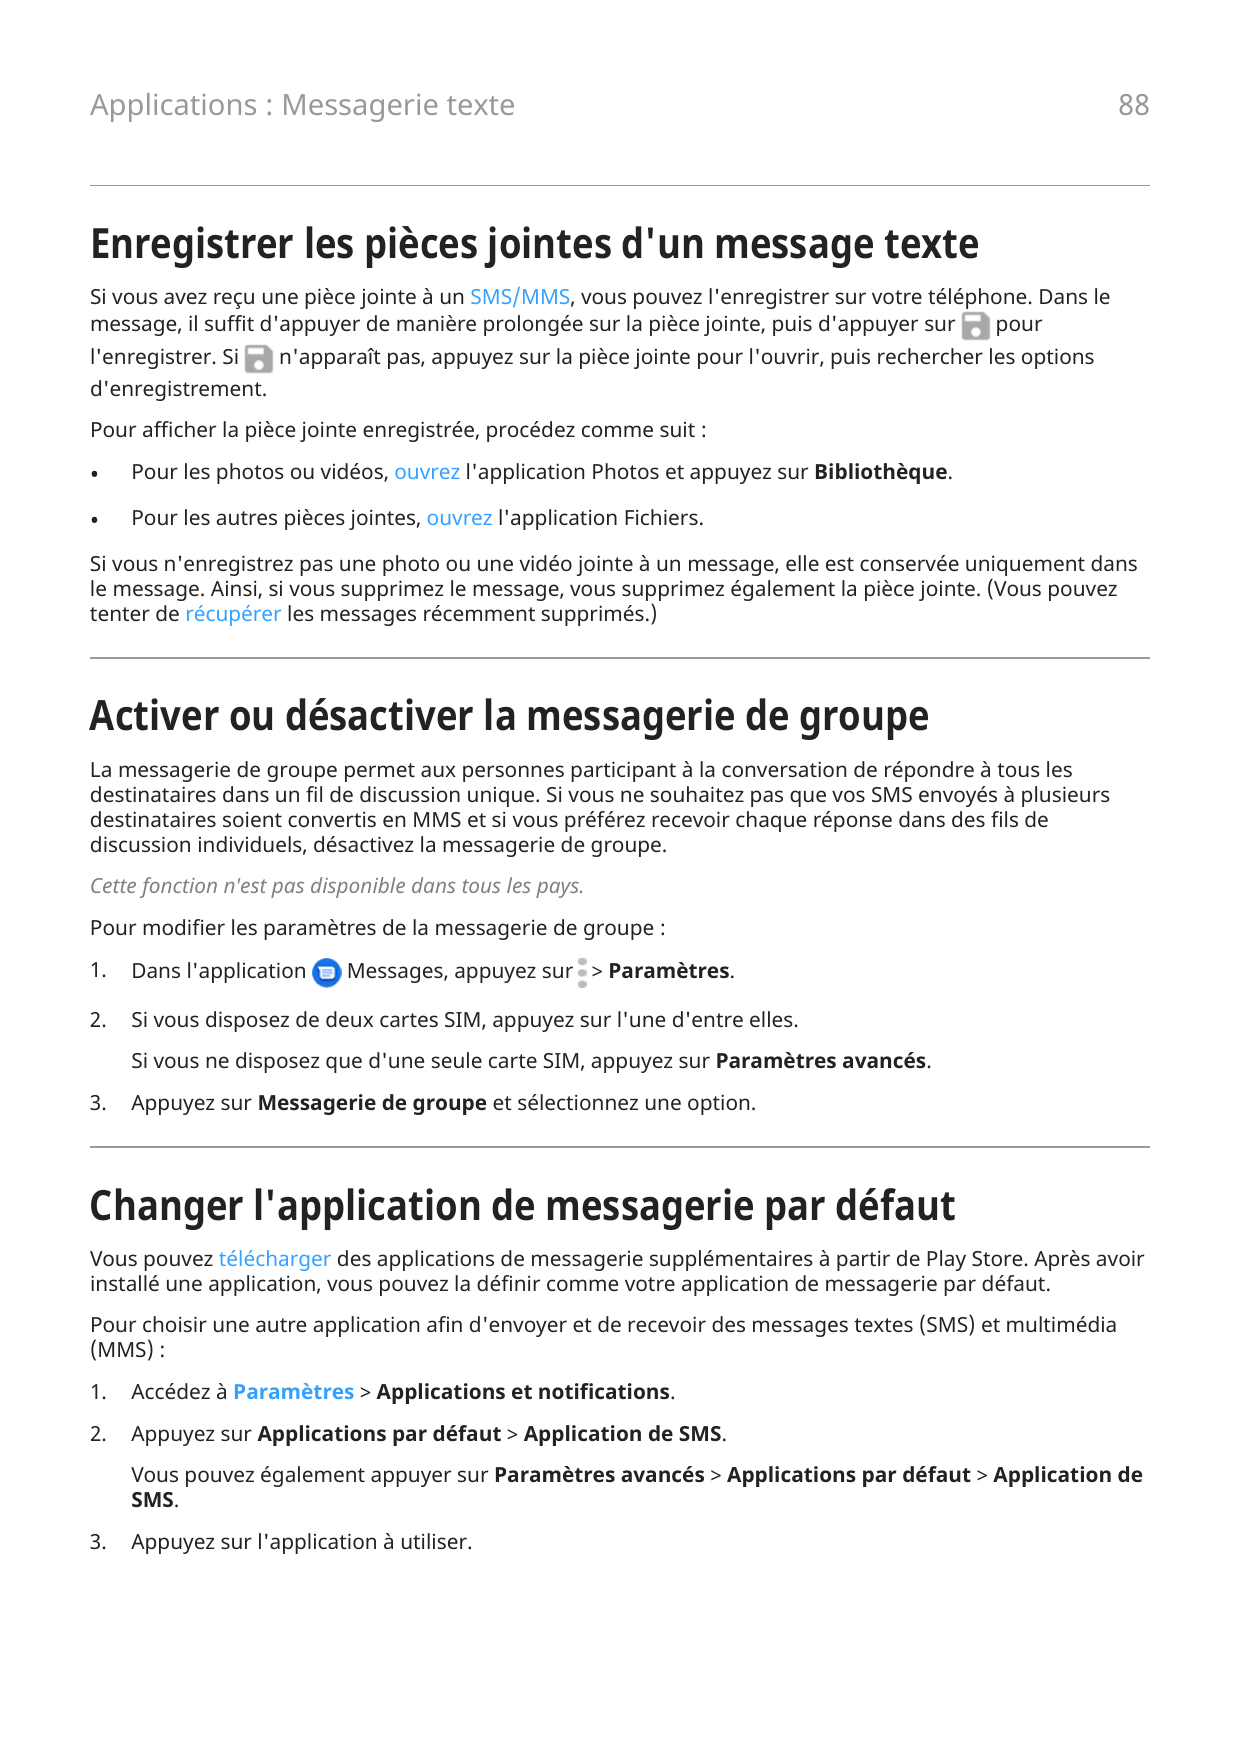 Applications : Messagerie texte88Enregistrer les pièces jointes d'un message texteSi vous avez reçu une pièce jointe à un SMS/MM